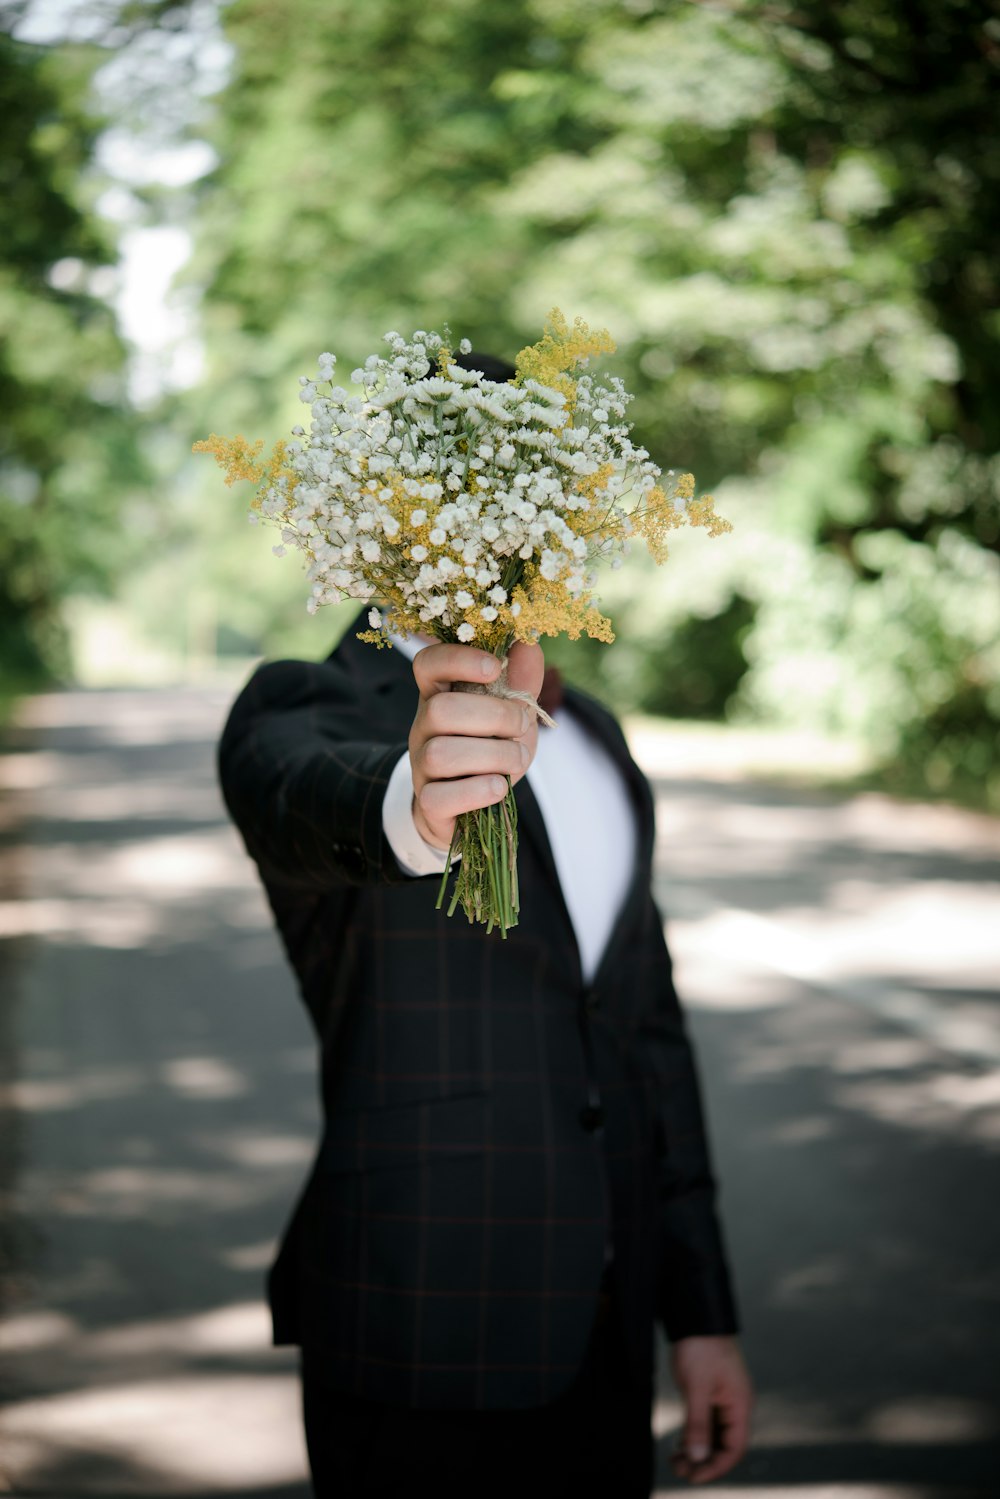 花束を持った黒いスーツのジャケットを着た男性のセレクティブフォーカス写真